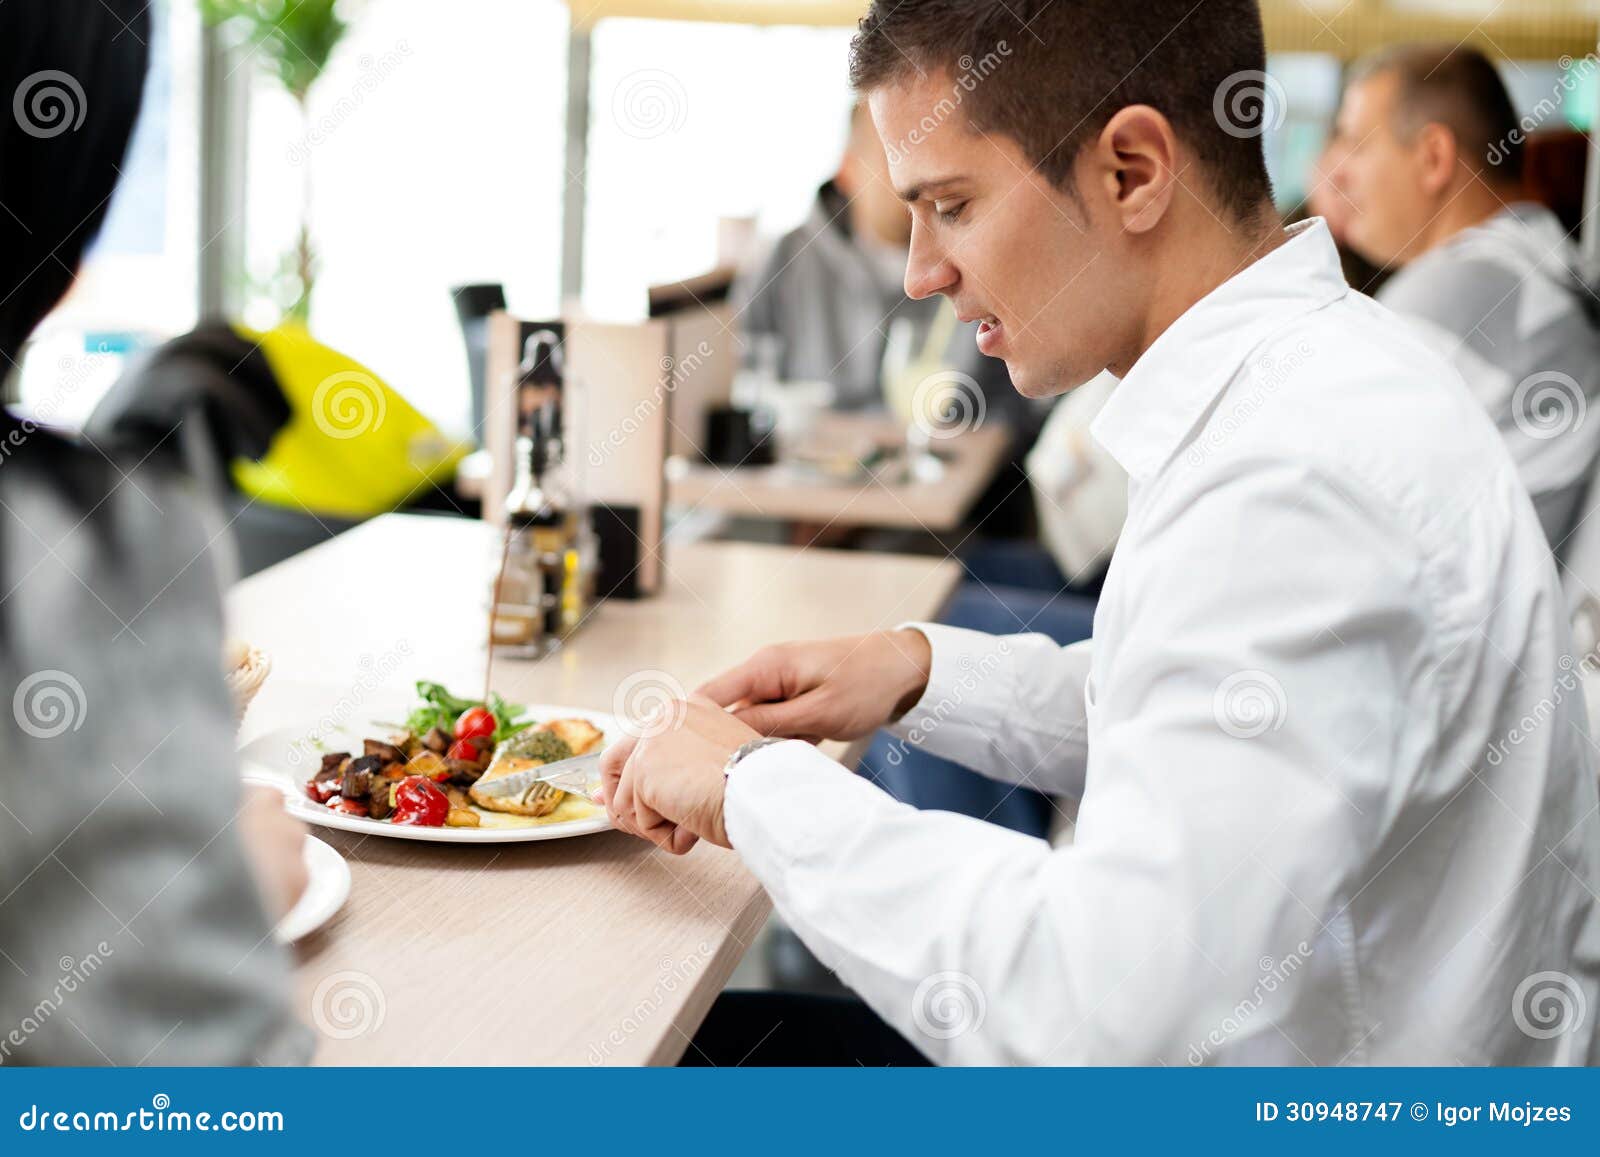 Что не следует класть на стол. Мужчина обедает в ресторане. Мужчина обедает в столовой. Мужчина в столовой. Локти на столе.